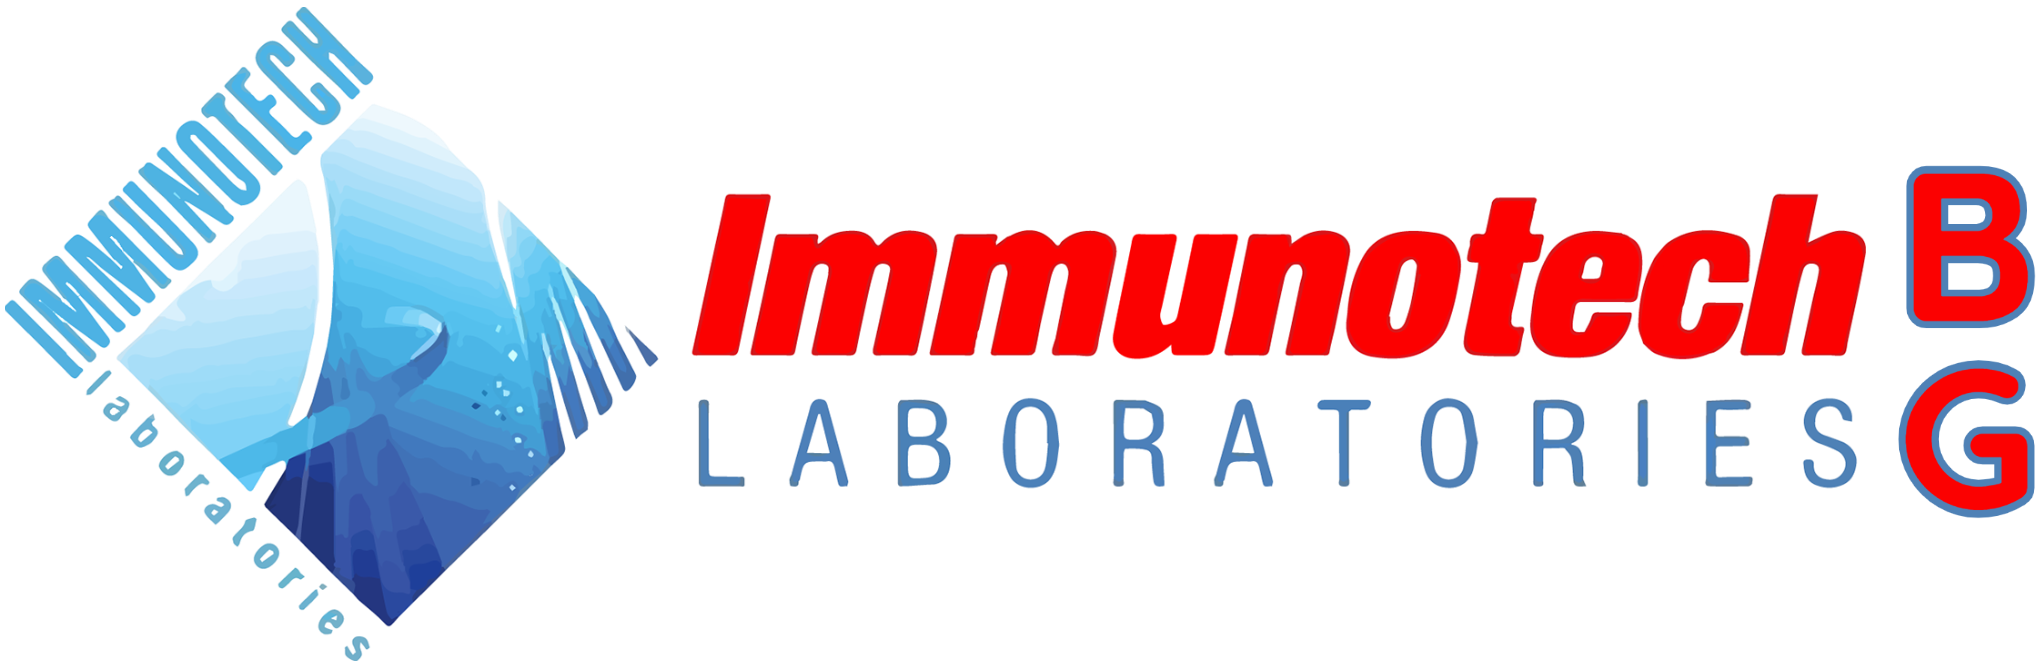 Immunotech Laboratories BG